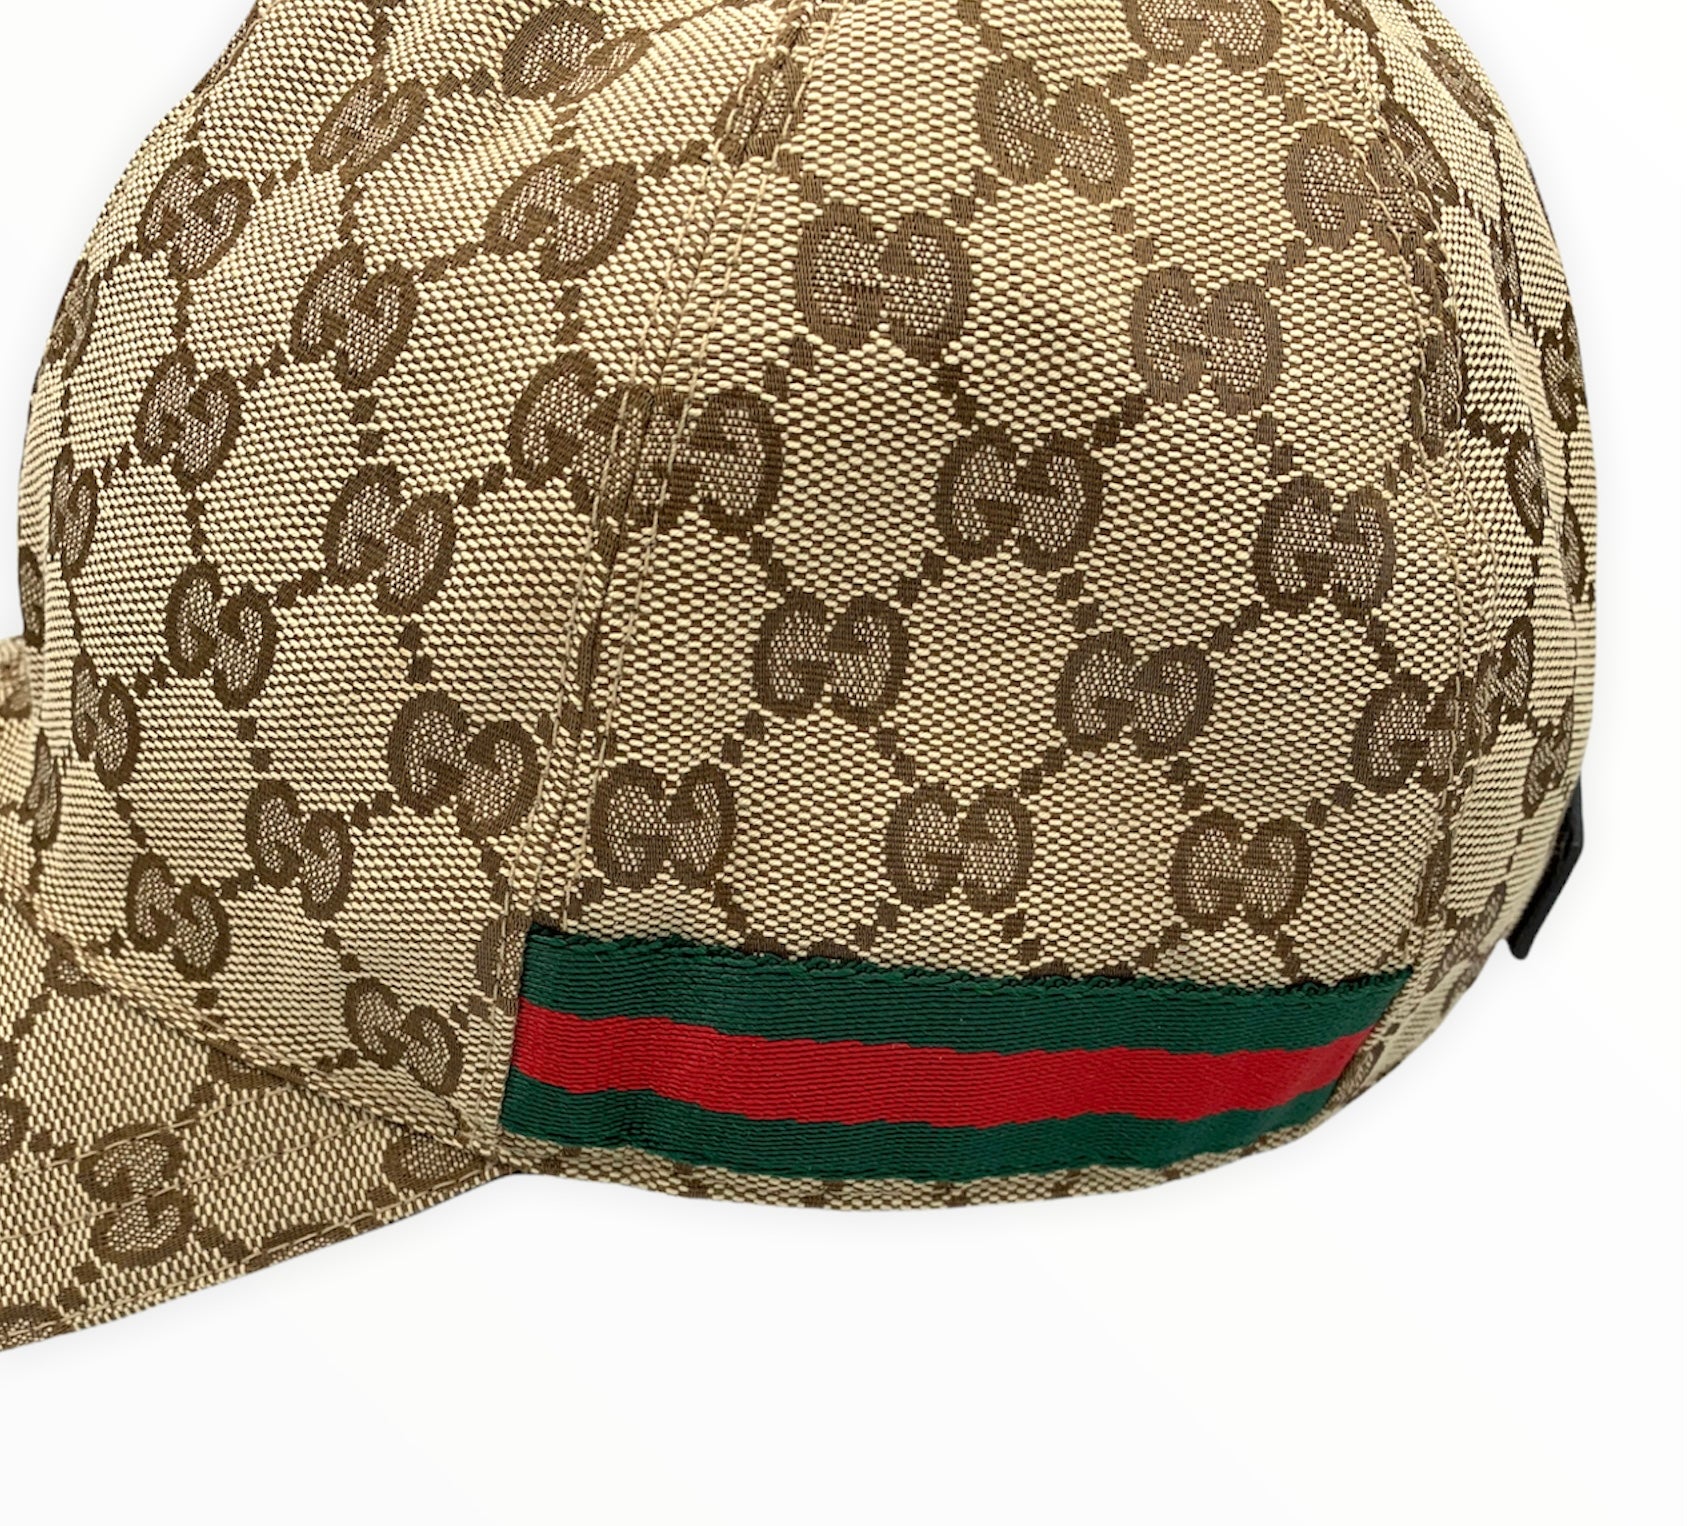 Gucci baseball cap $78  Gucci hat, Gucci, Baseball cap